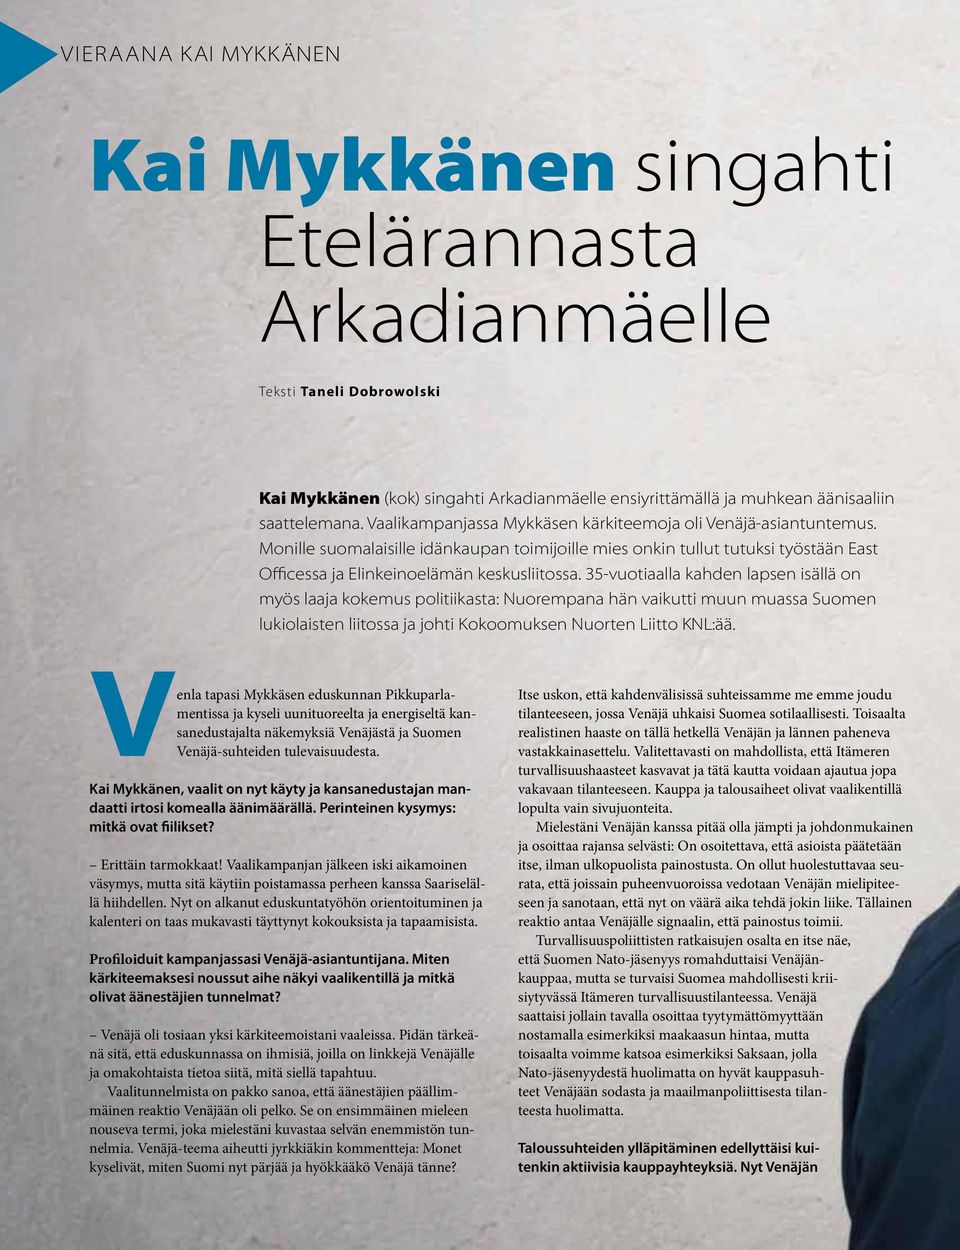 35-vuotiaalla kahden lapsen isällä on myös laaja kokemus politiikasta: Nuorempana hän vaikutti muun muassa Suomen lukiolaisten liitossa ja johti Kokoomuksen Nuorten Liitto KNL:ää.